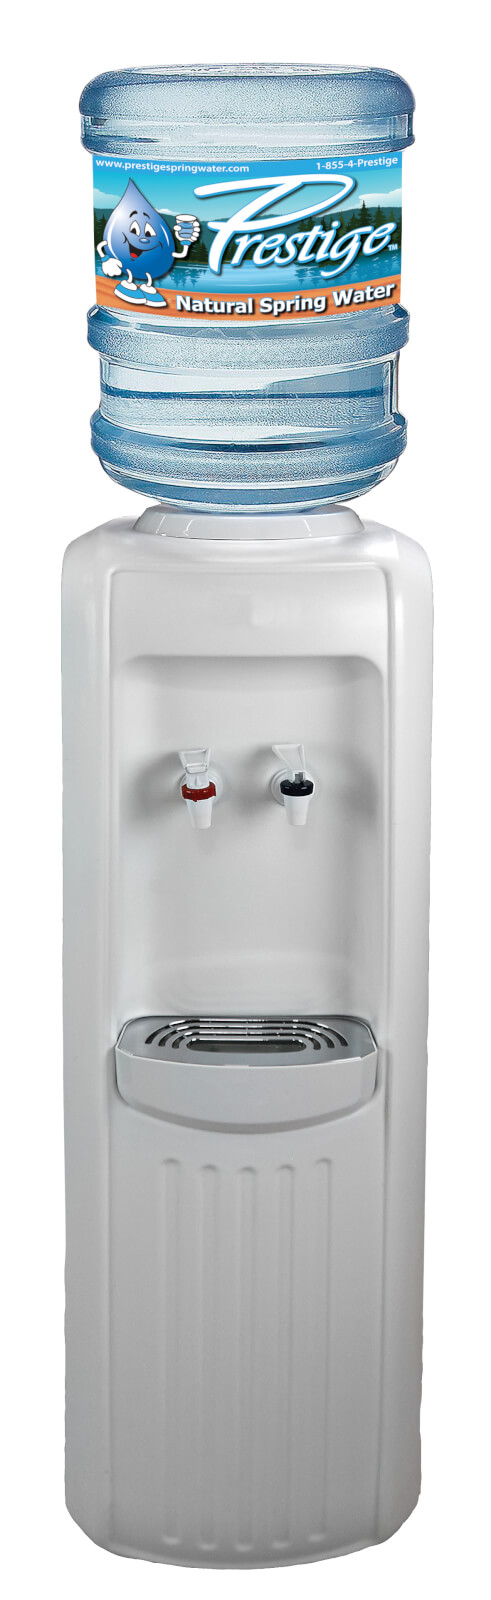 Water Coolers | Prestige Spring Water